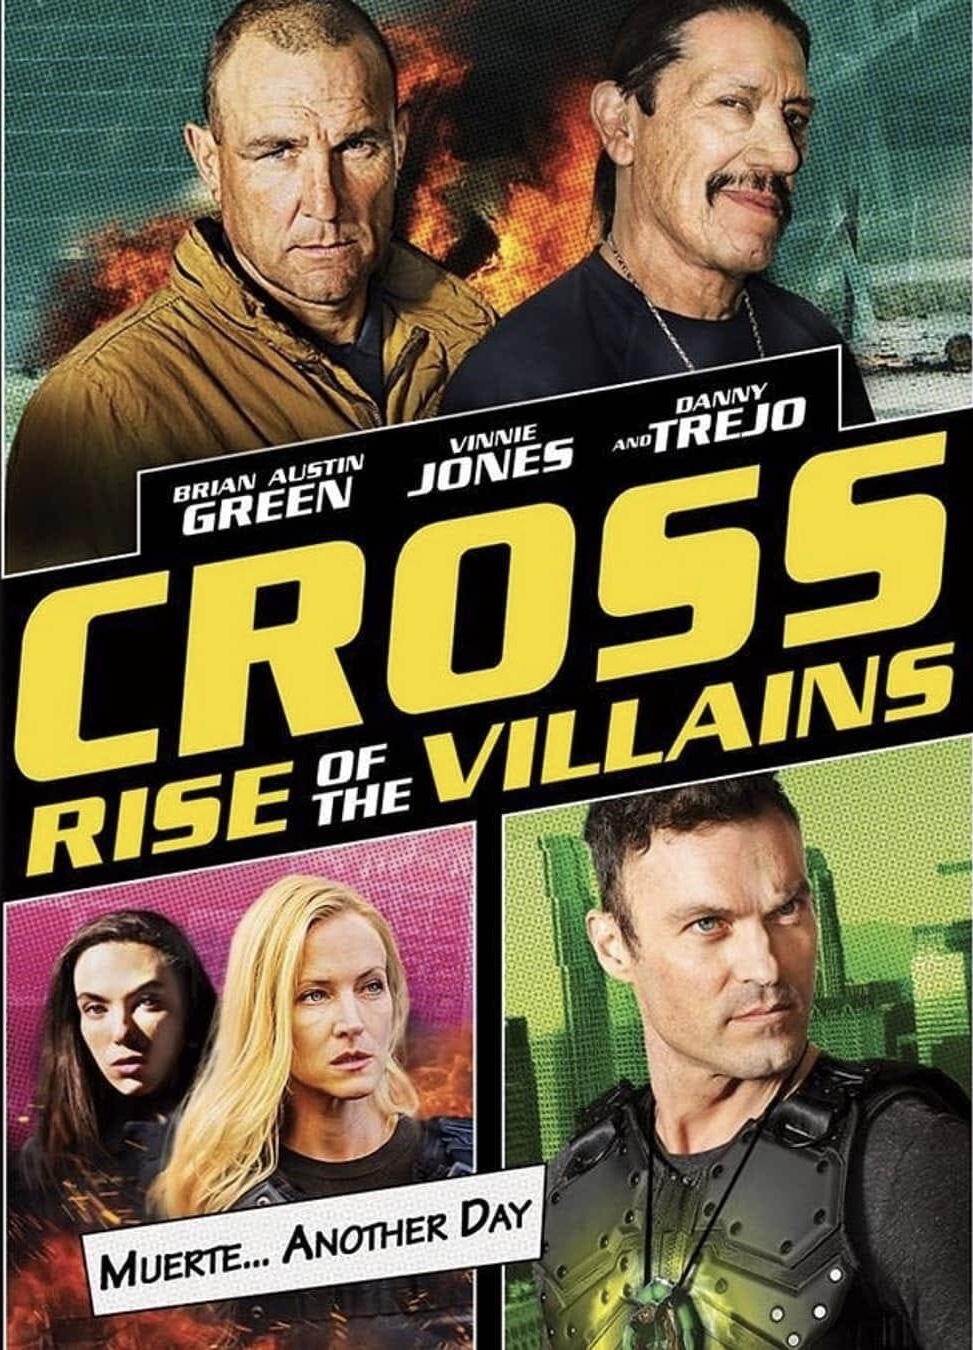 Cross Rise Of The Villains (2019) Brian Austin Green